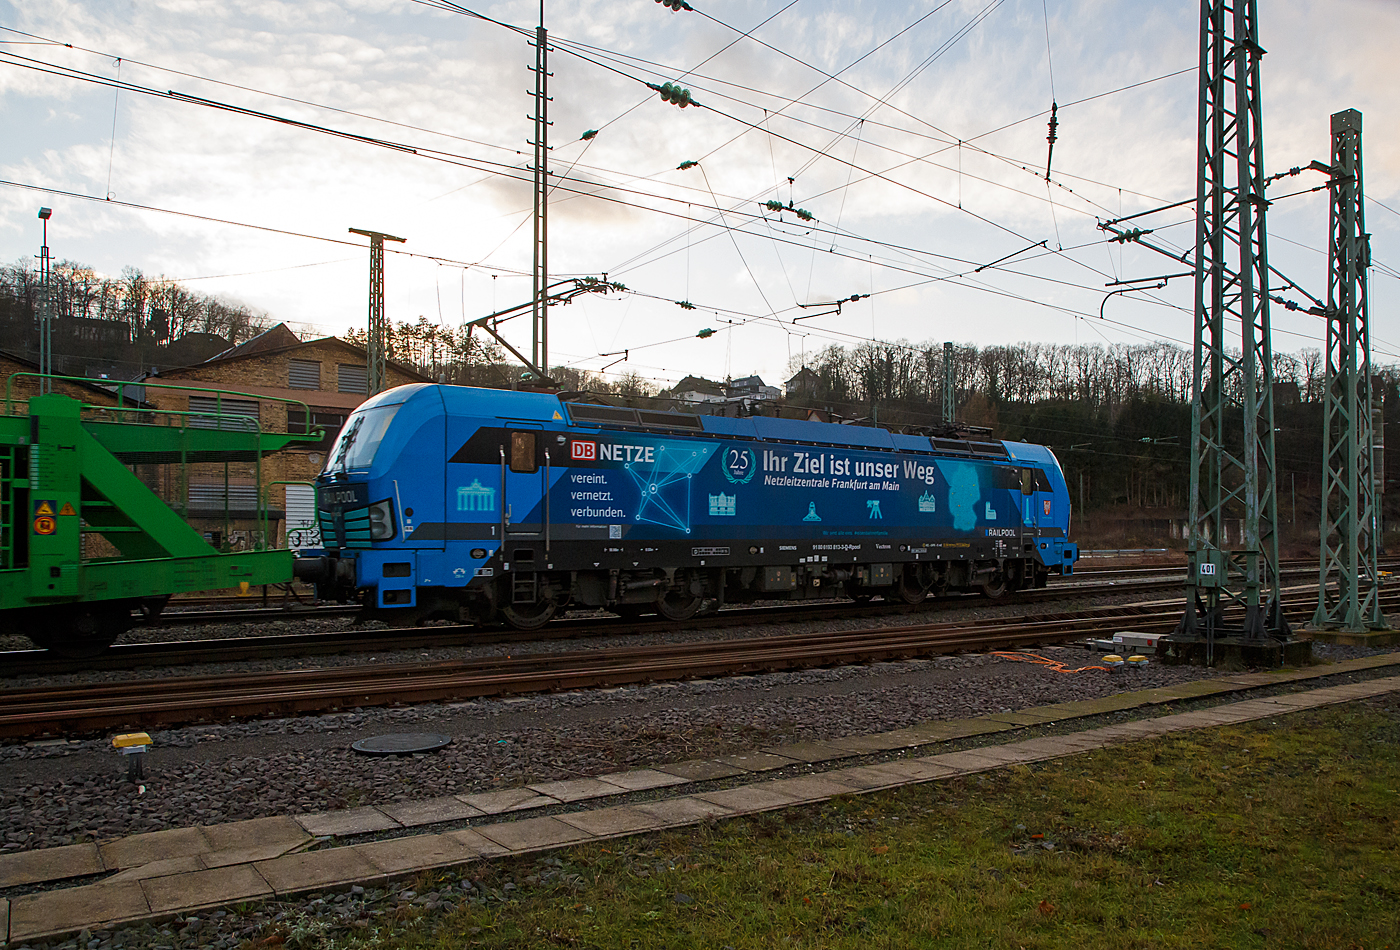 Die Siemens Vectron AC - 193 813-3 „Frankfurt am Main“ (91 80 6193 813-3 D-Rpool) der Railpool GmbH (Mnchen), seit 2022 mit Ganzreklame der DB Netze „Ihr Ziel ist unser Weg“ fhrt am 11.01.2022, mit einem langen leeren Autotransportzug der HDLMAYR AG, durch Betzdorf (Sieg) in Richtung Kln.

Die Siemens Vectron AC wurde 2014 von Siemens Mobility GmbH in Mnchen-Allach unter der Fabriknummer 21903 gebaut und an die Railpool GmbH in Mnchen geliefert. Diese Vectron Lokomotive ist als AC – Lokomotive (Wechselstrom-Variante) mit 6.400 kW konzipiert und zugelassen fr Deutschland, sterreich, Ungarn und Rumnien, sie hat eine Hchstgeschwindigkeit von 200 km/h.
